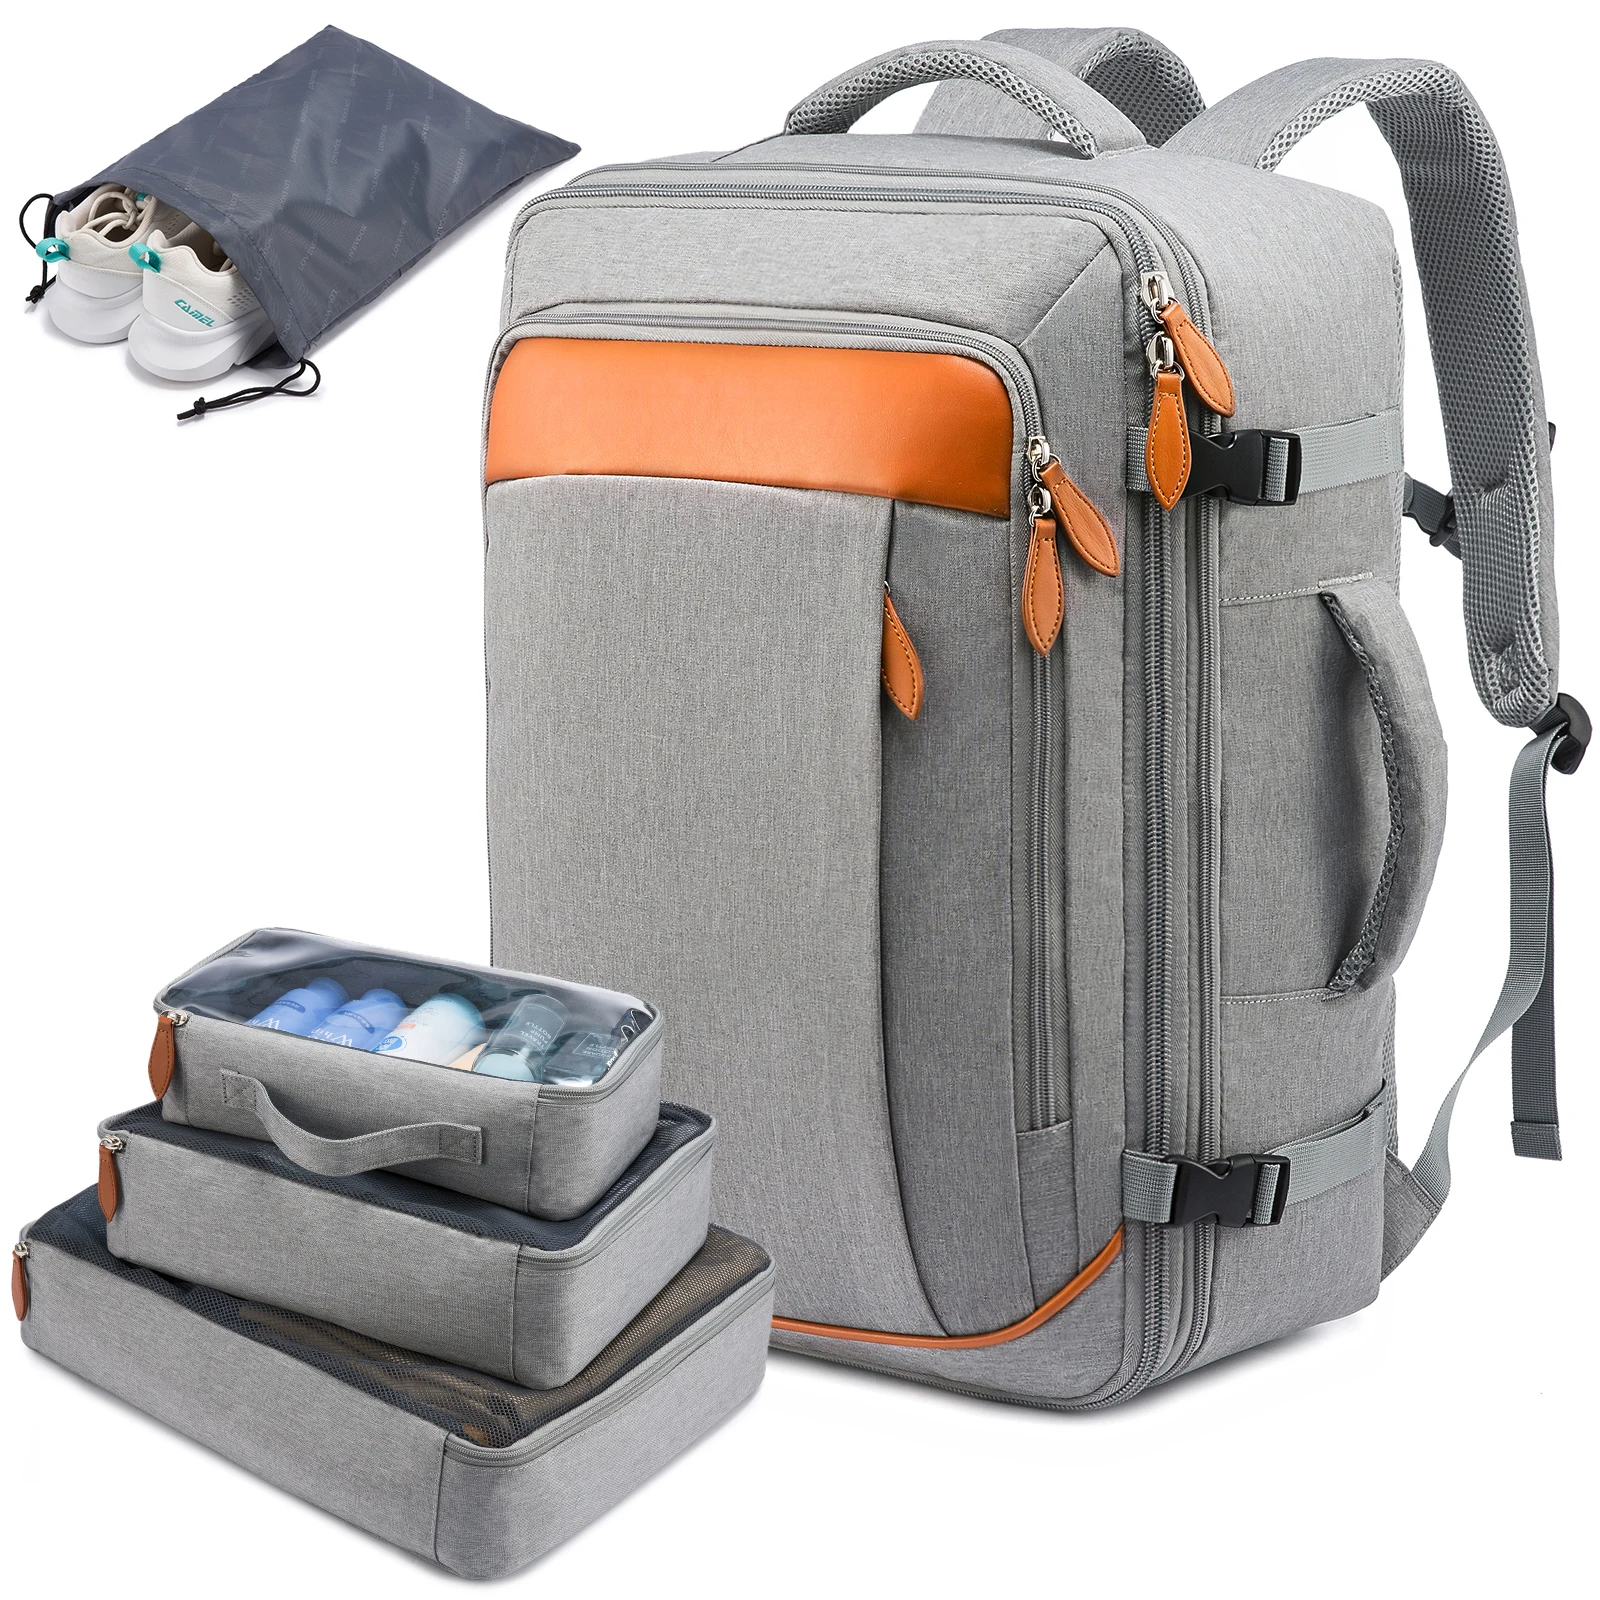 

LOVEVOOK 17in laptop Backpacks Airline bag wholesale business waterproof laptop bags school travel women men smart backpack